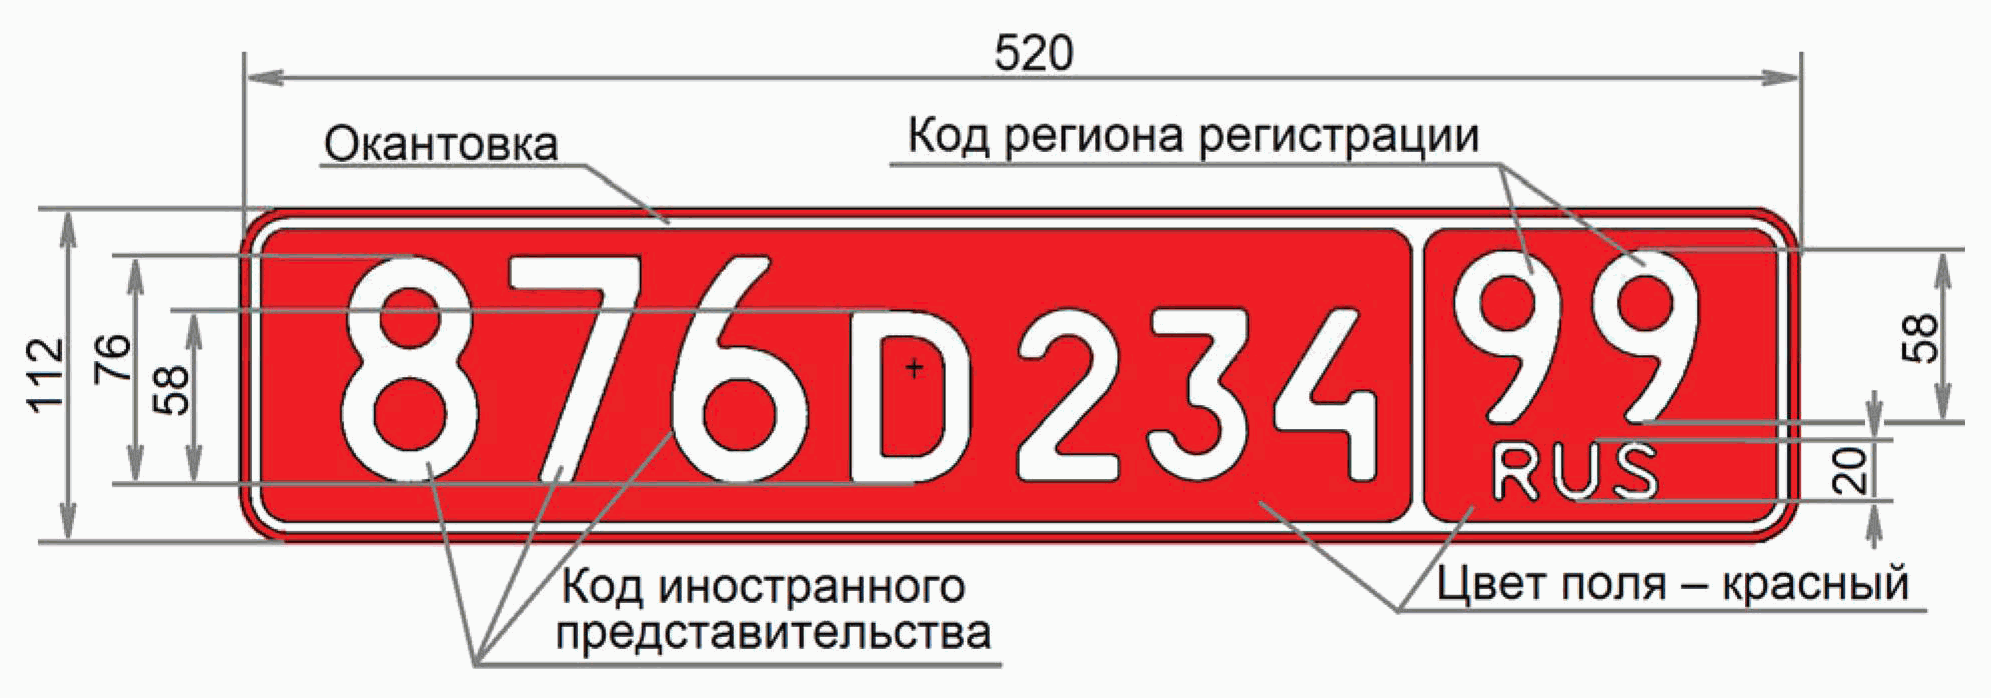 Номера машин на красном фоне. Красный номерной знак. Красная табличка номера авто. Красный номерной знак на машине. Регистрационный знак Тип 15.